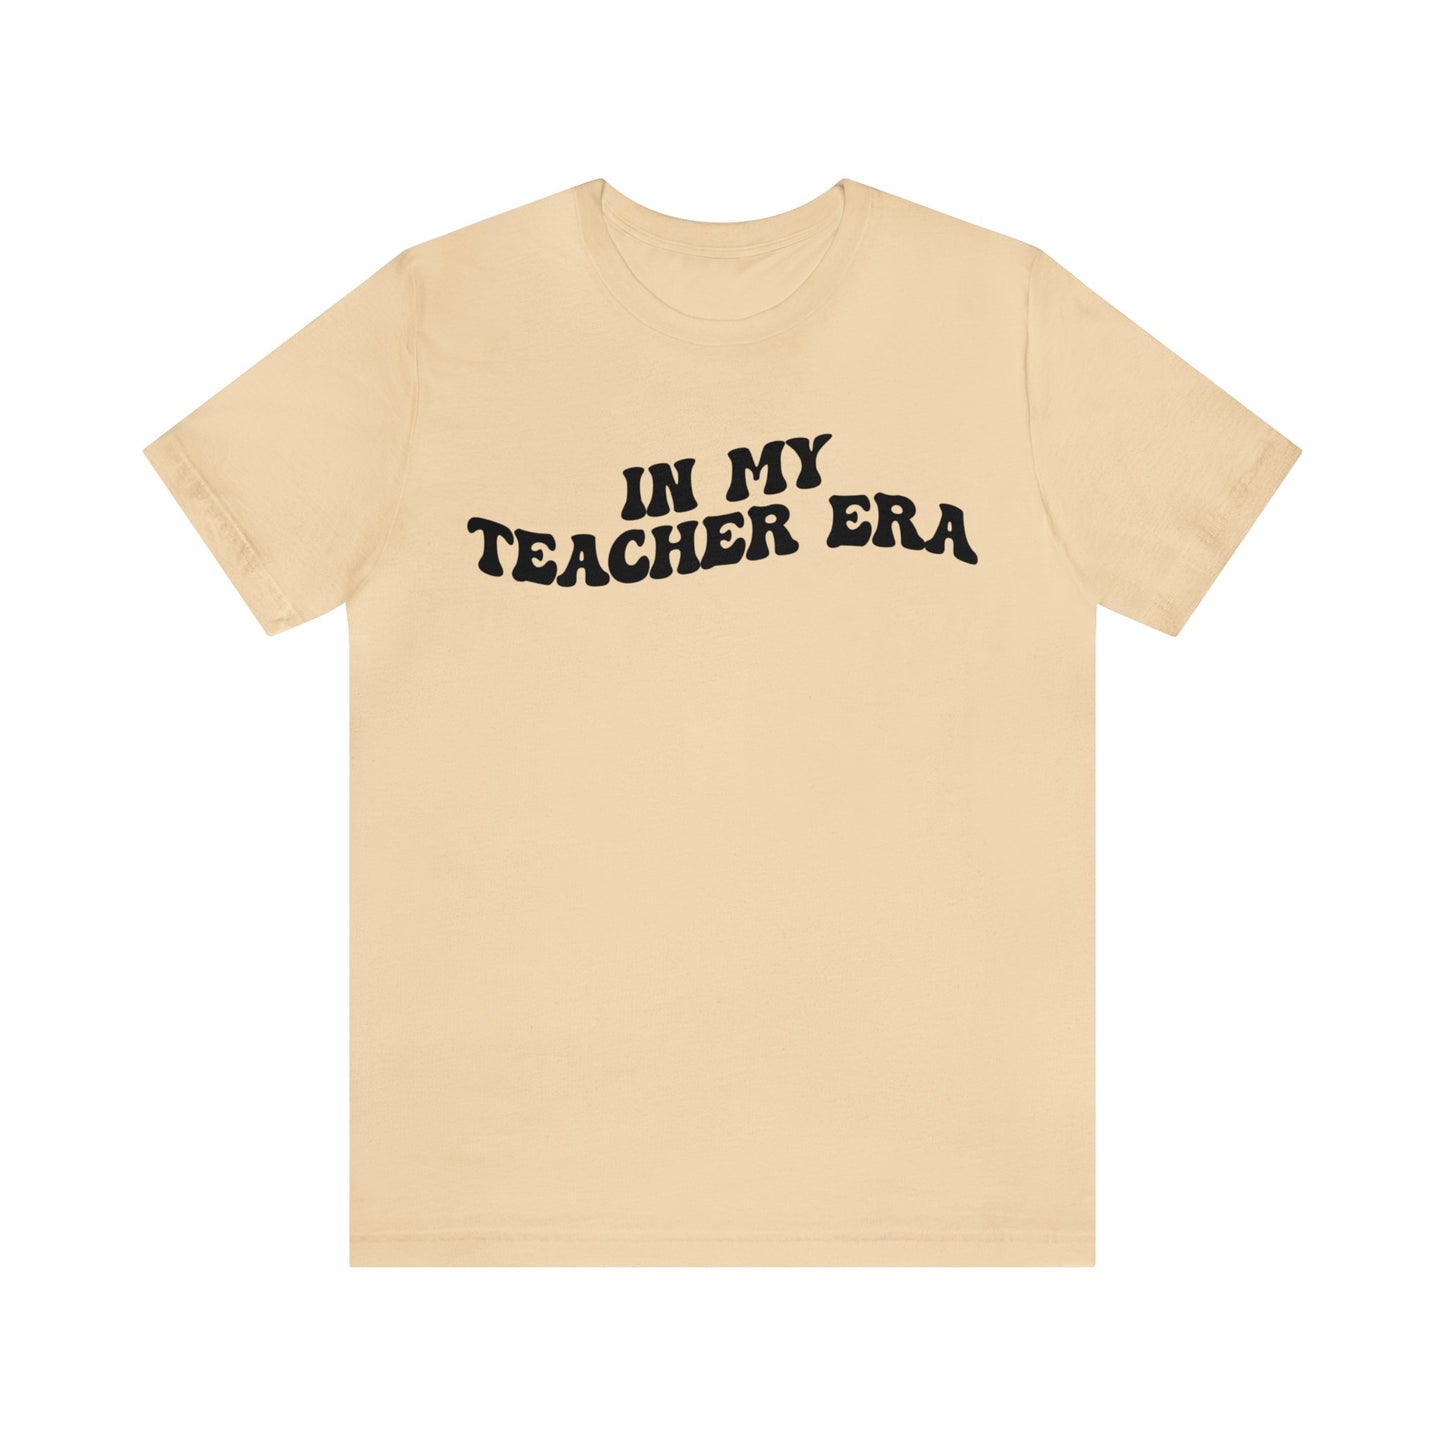 In My Teacher Era Shirt, New Teacher Shirt, Future Teacher Shirt, Funny Teacher Shirt, Teacher's Month Shirt, School Gift Shirt, T1353